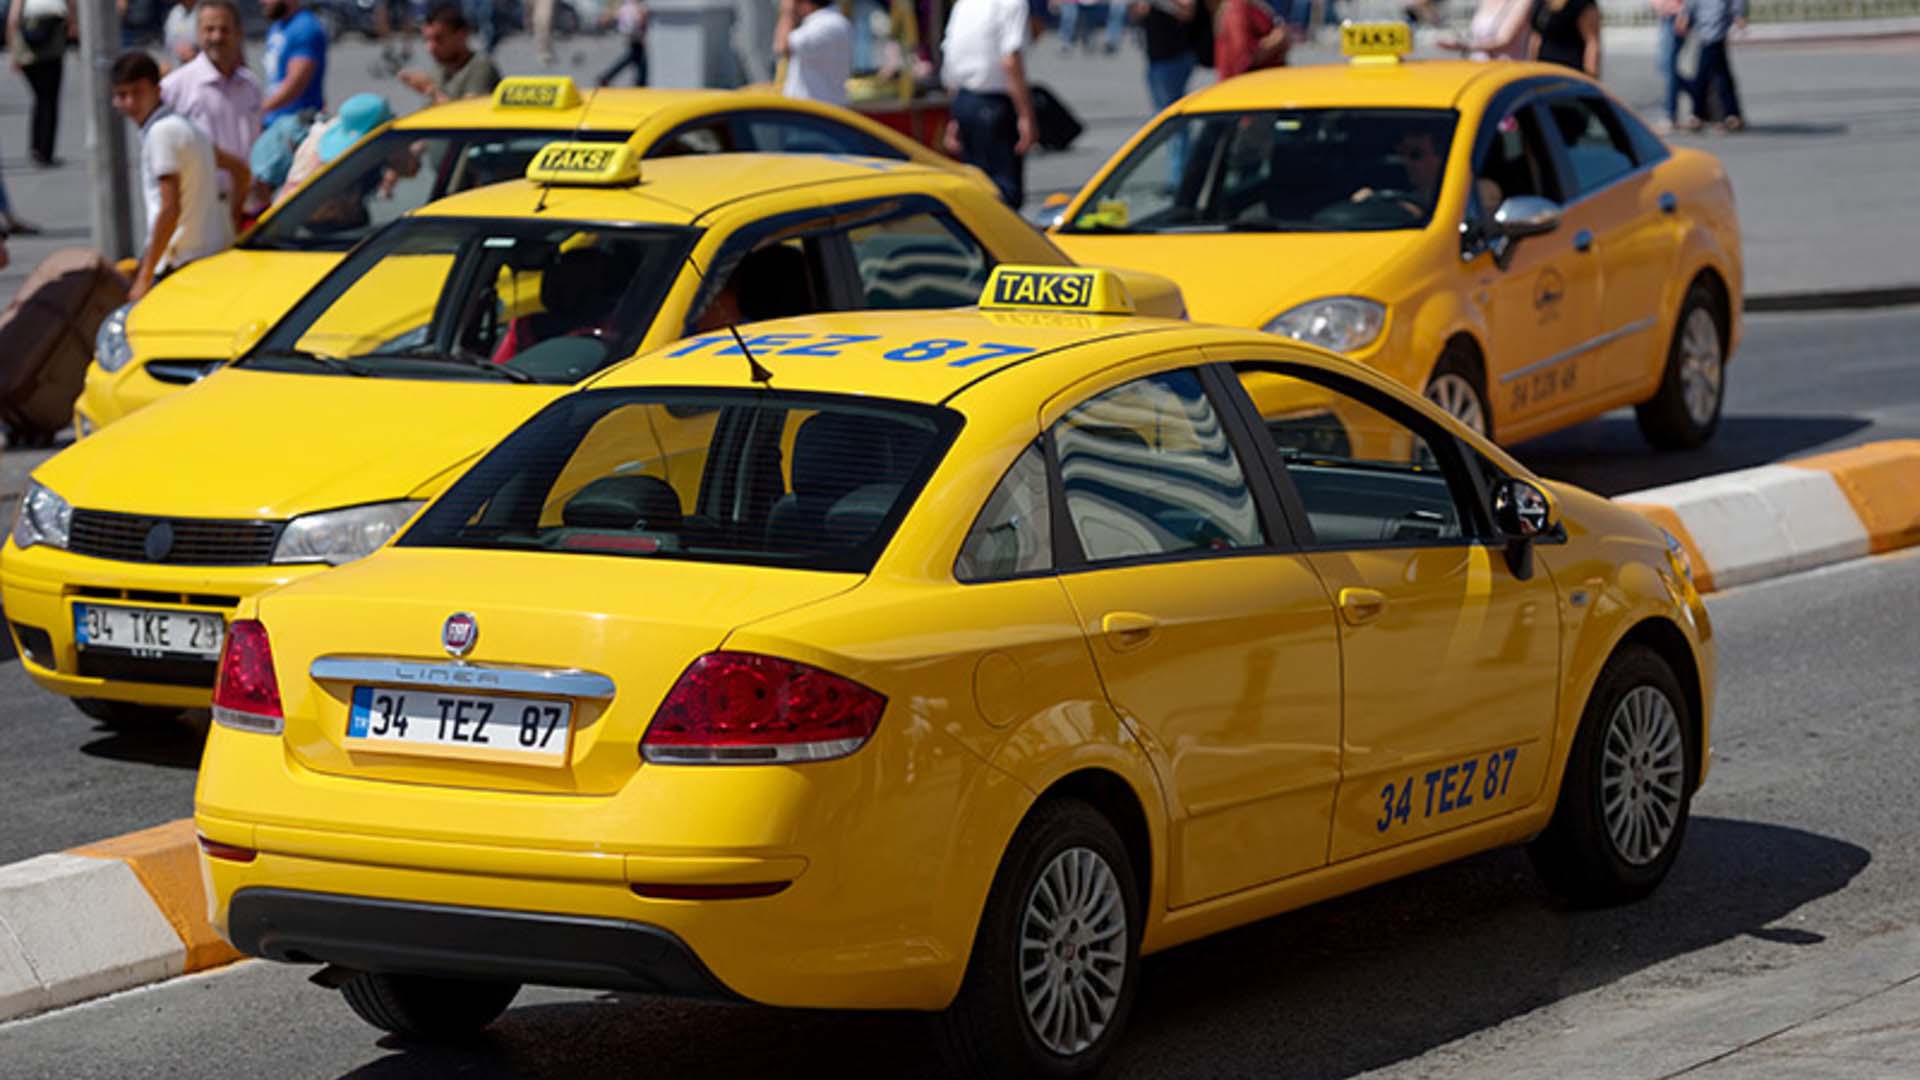 397 taksicinin belgeleri askıya alınmıştı! İBB ve taksiciler görüşme kararı aldı 